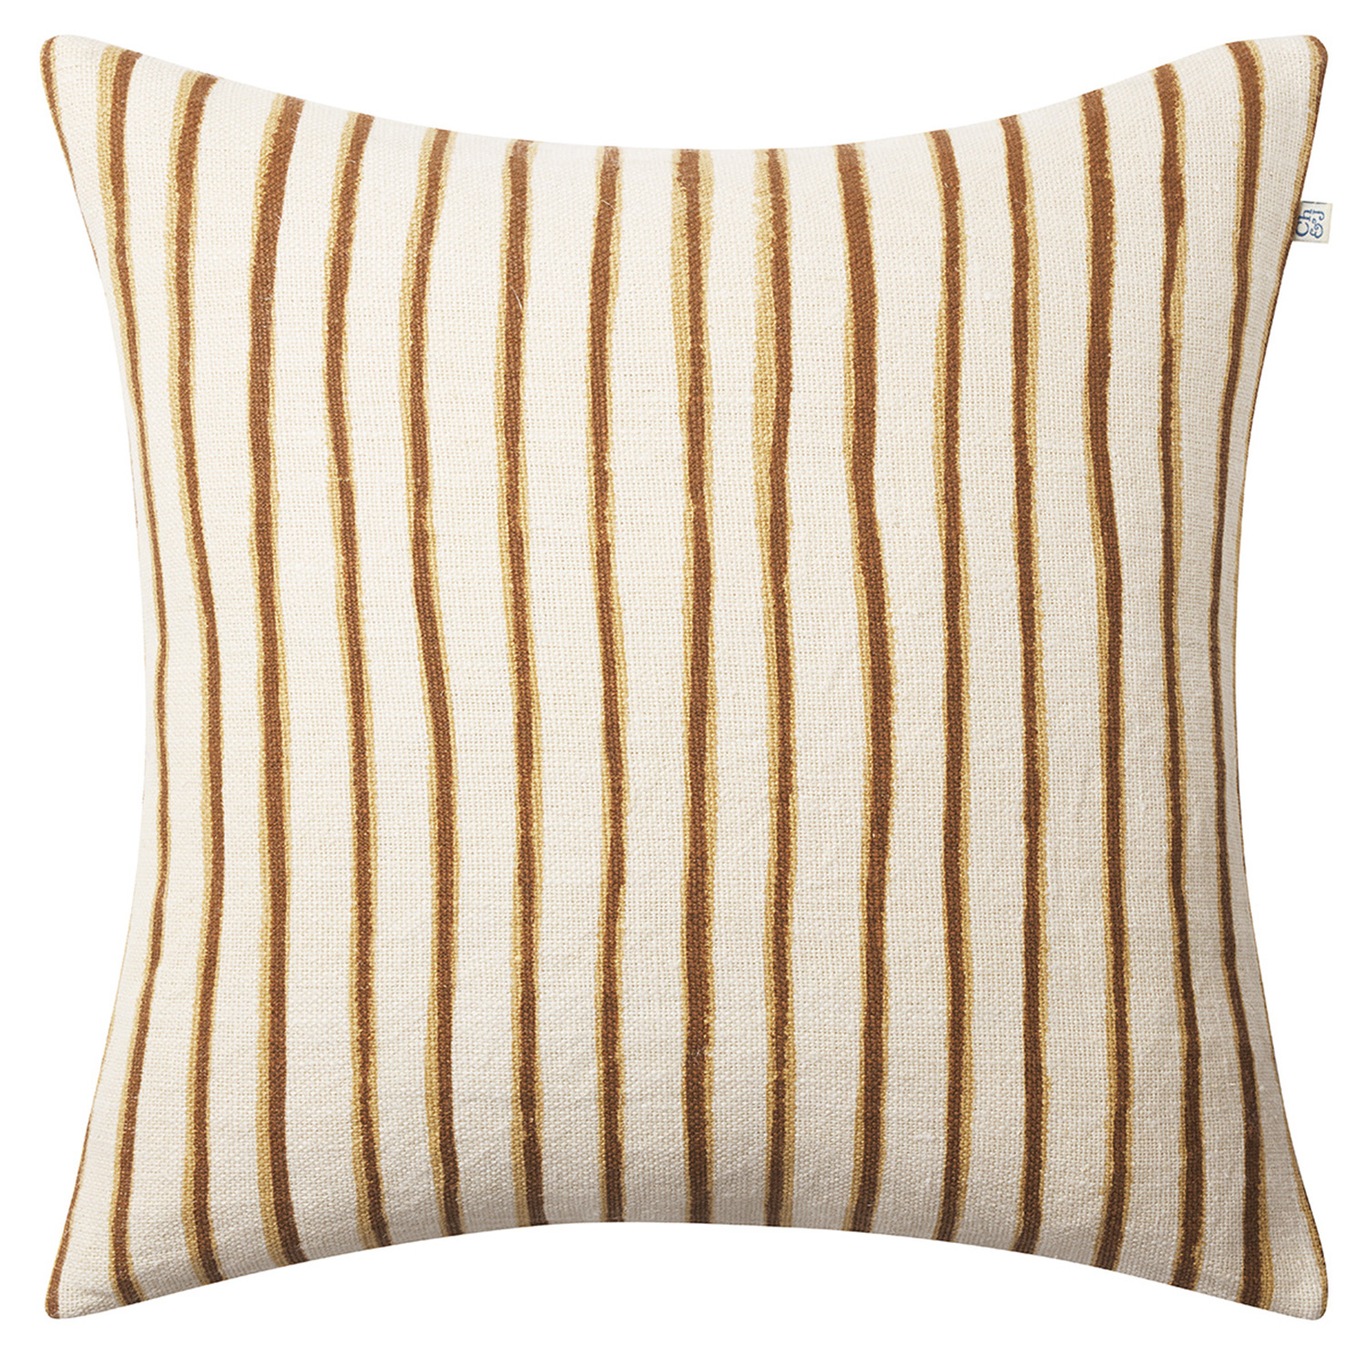 Jaipur Stripe Cushion Cover 50x50 cm Khaki/Taupe